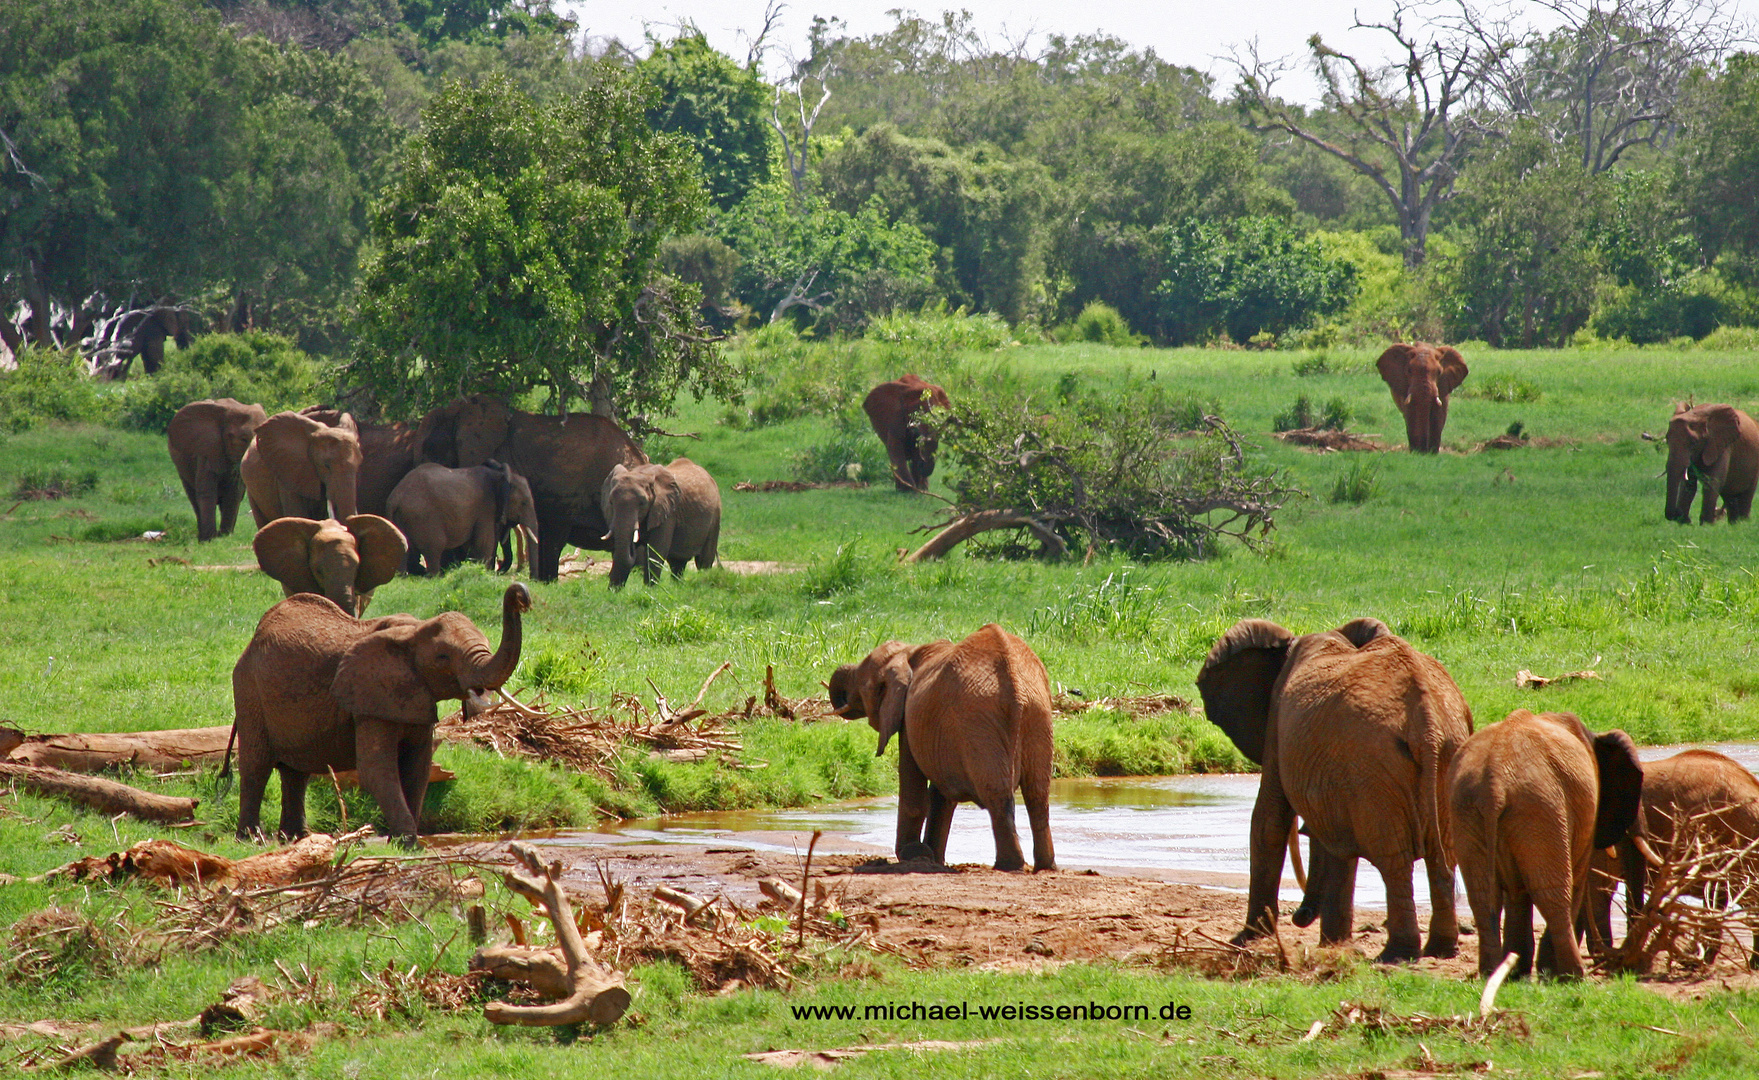 Elefanten in grüner Landschaft